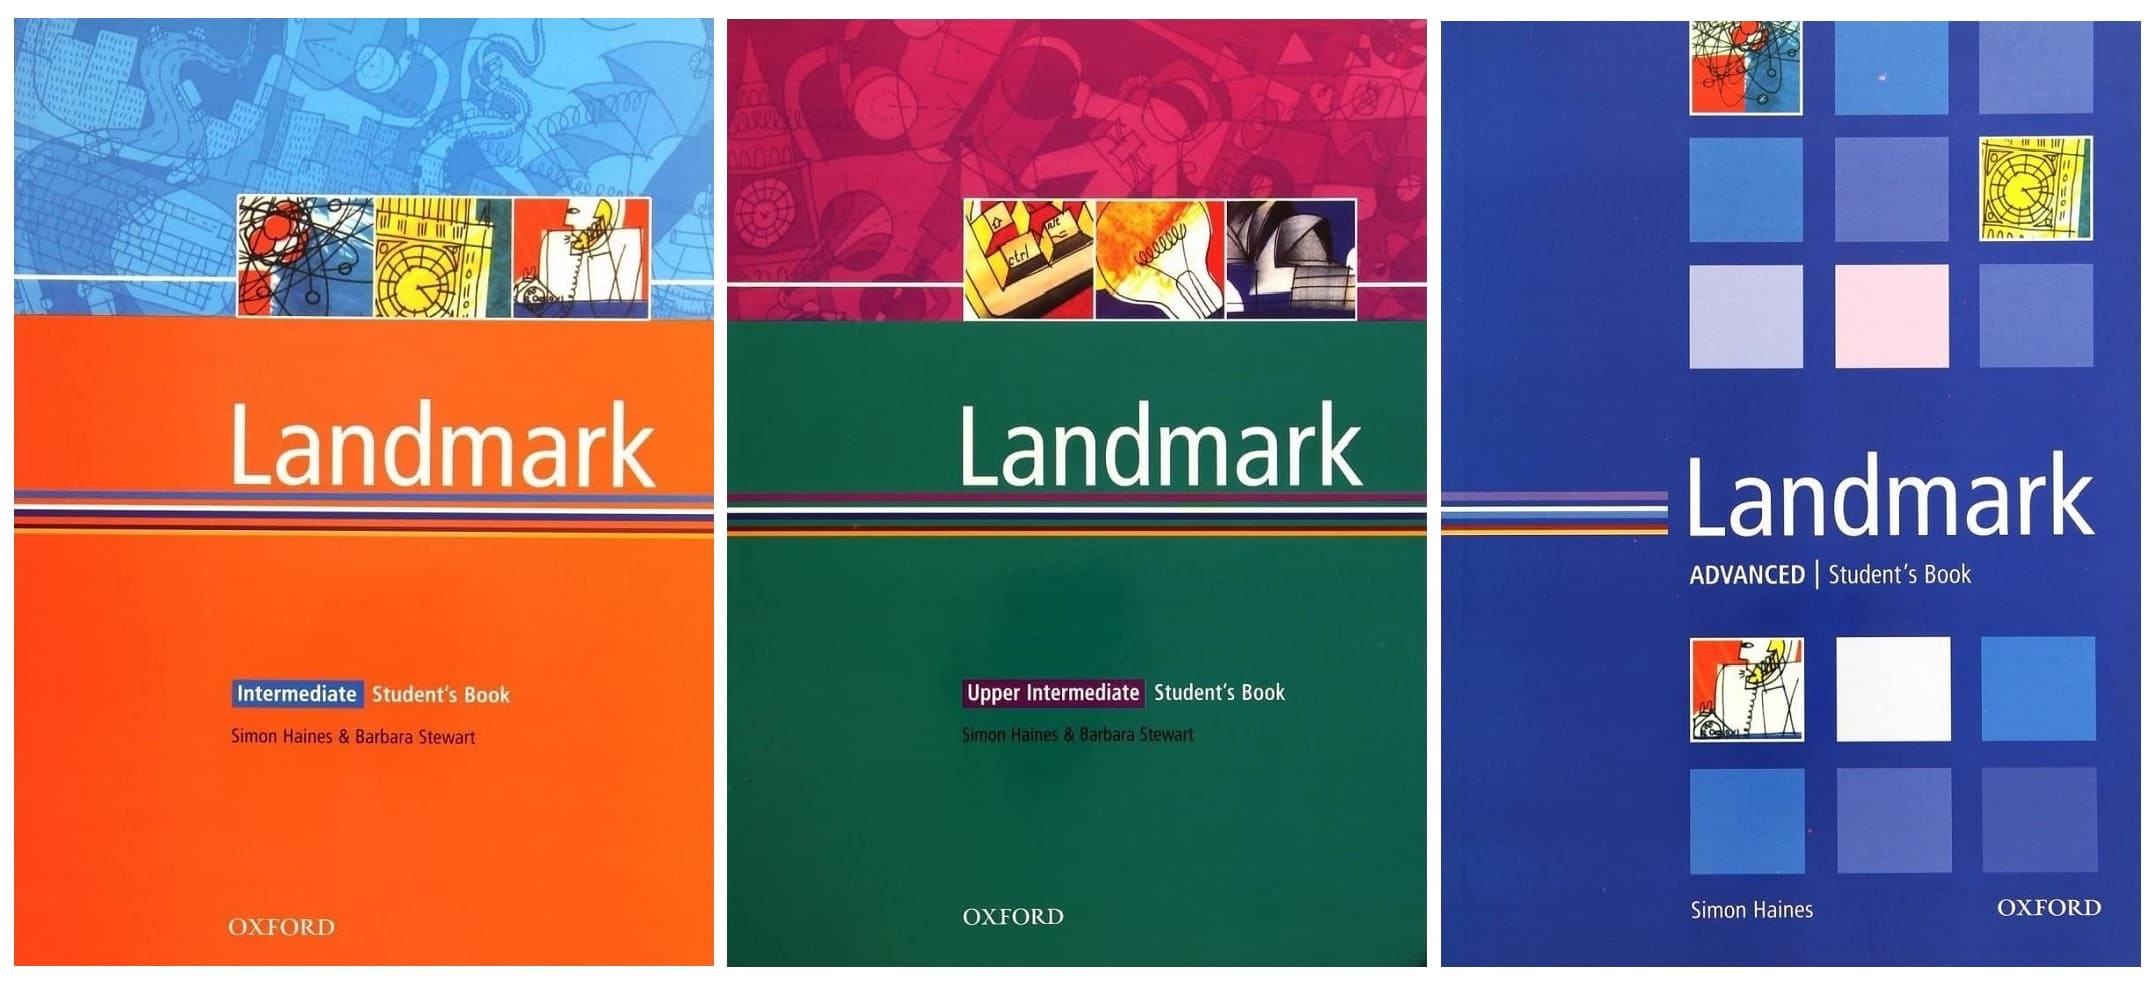 خرید کتاب زبان | کتاب زبان اصلی | Landmark | لند مارک